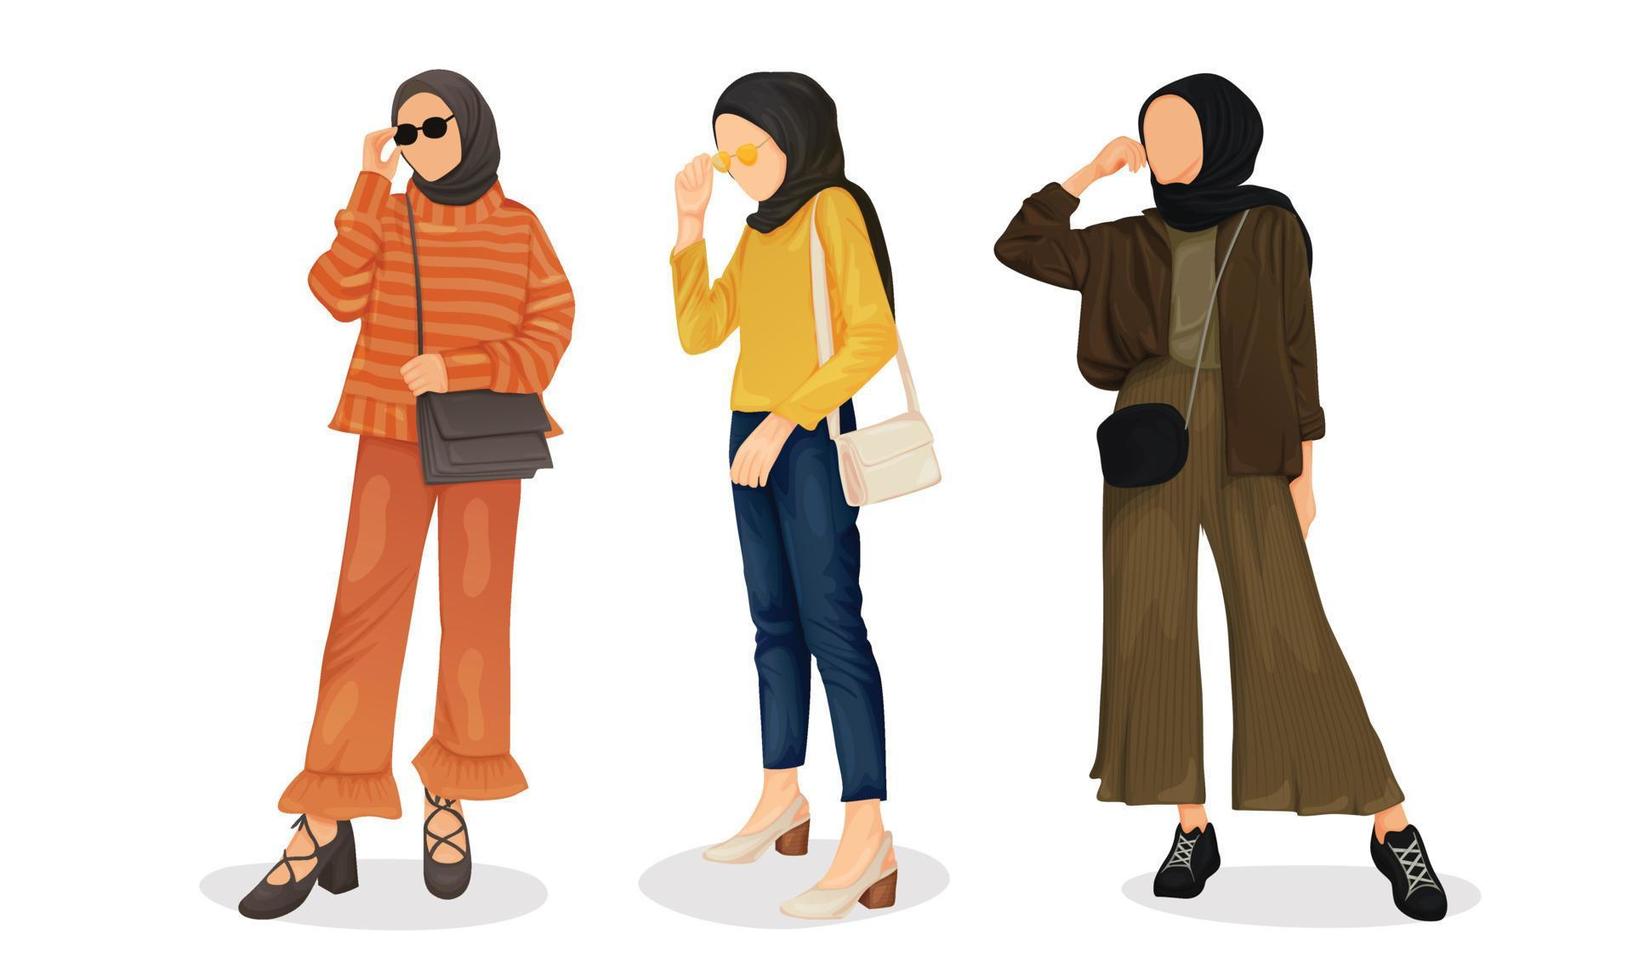 zakelijke hijab-vrouwen met kleurrijke outfit voor werkdagoutfit maken haar elke dag comfortabel. net als shirt, culotte, schoenen, sling bag vector